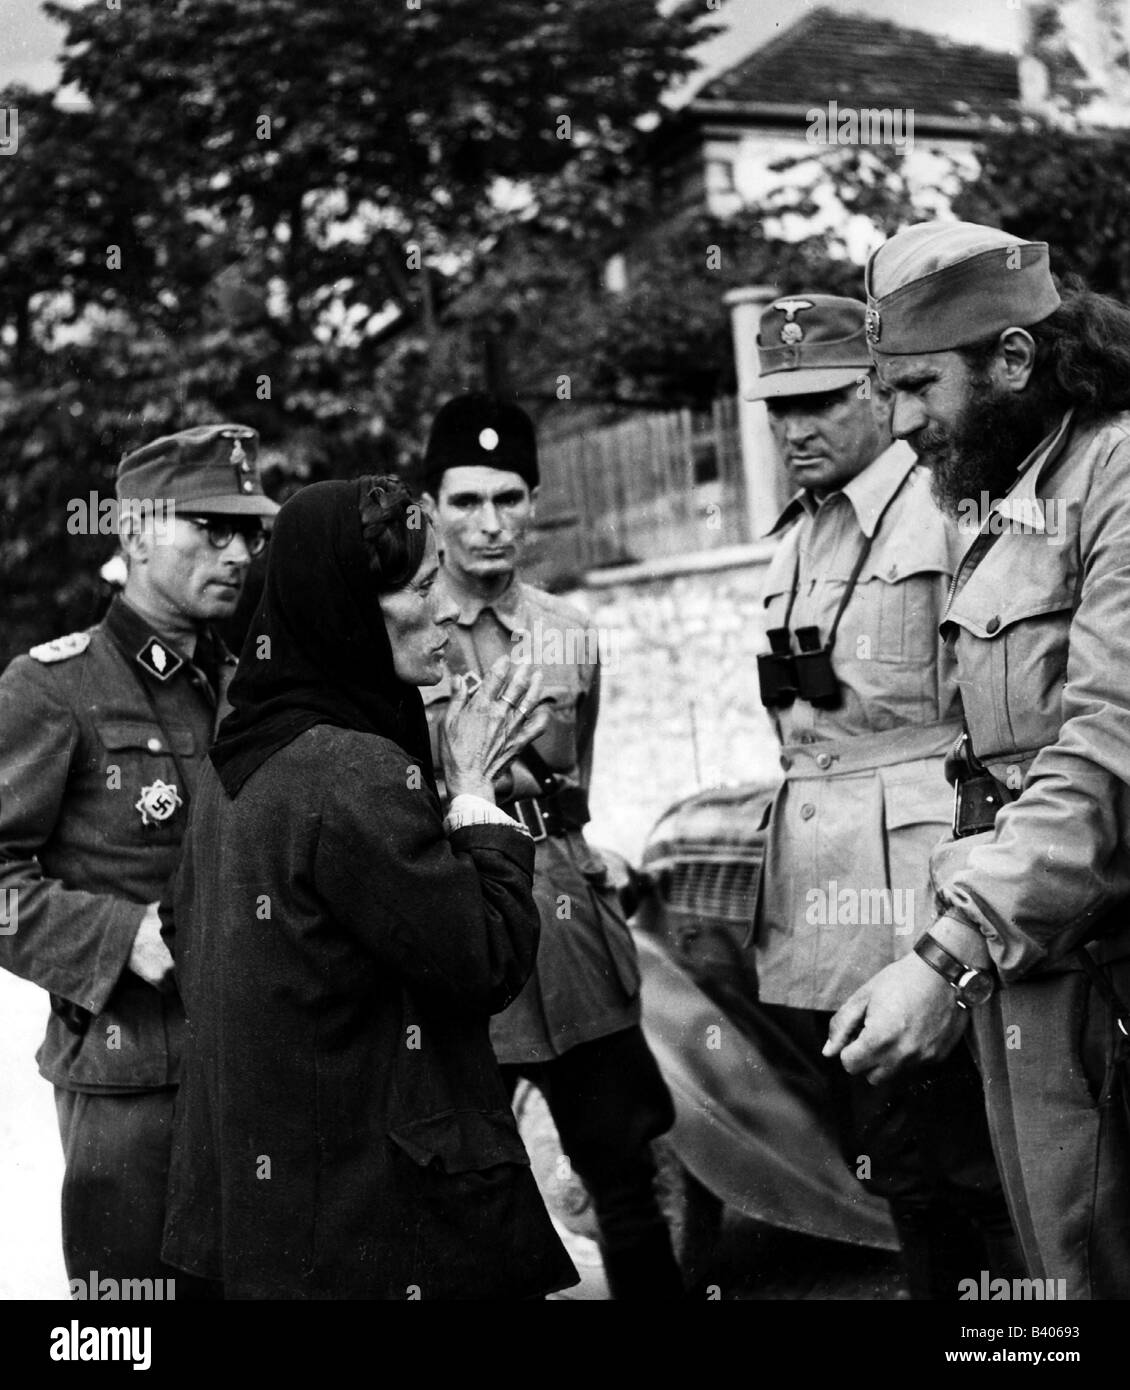 Ereignisse, Zweiter Weltkrieg/2. Weltkrieg, Jugoslawien, deutsche Offiziere der SS-Gebirgstruppen mit Jugoslawen (Ustasen oder Chetniks), die eine Frau befragen, um das Jahr 1942, Stockfoto